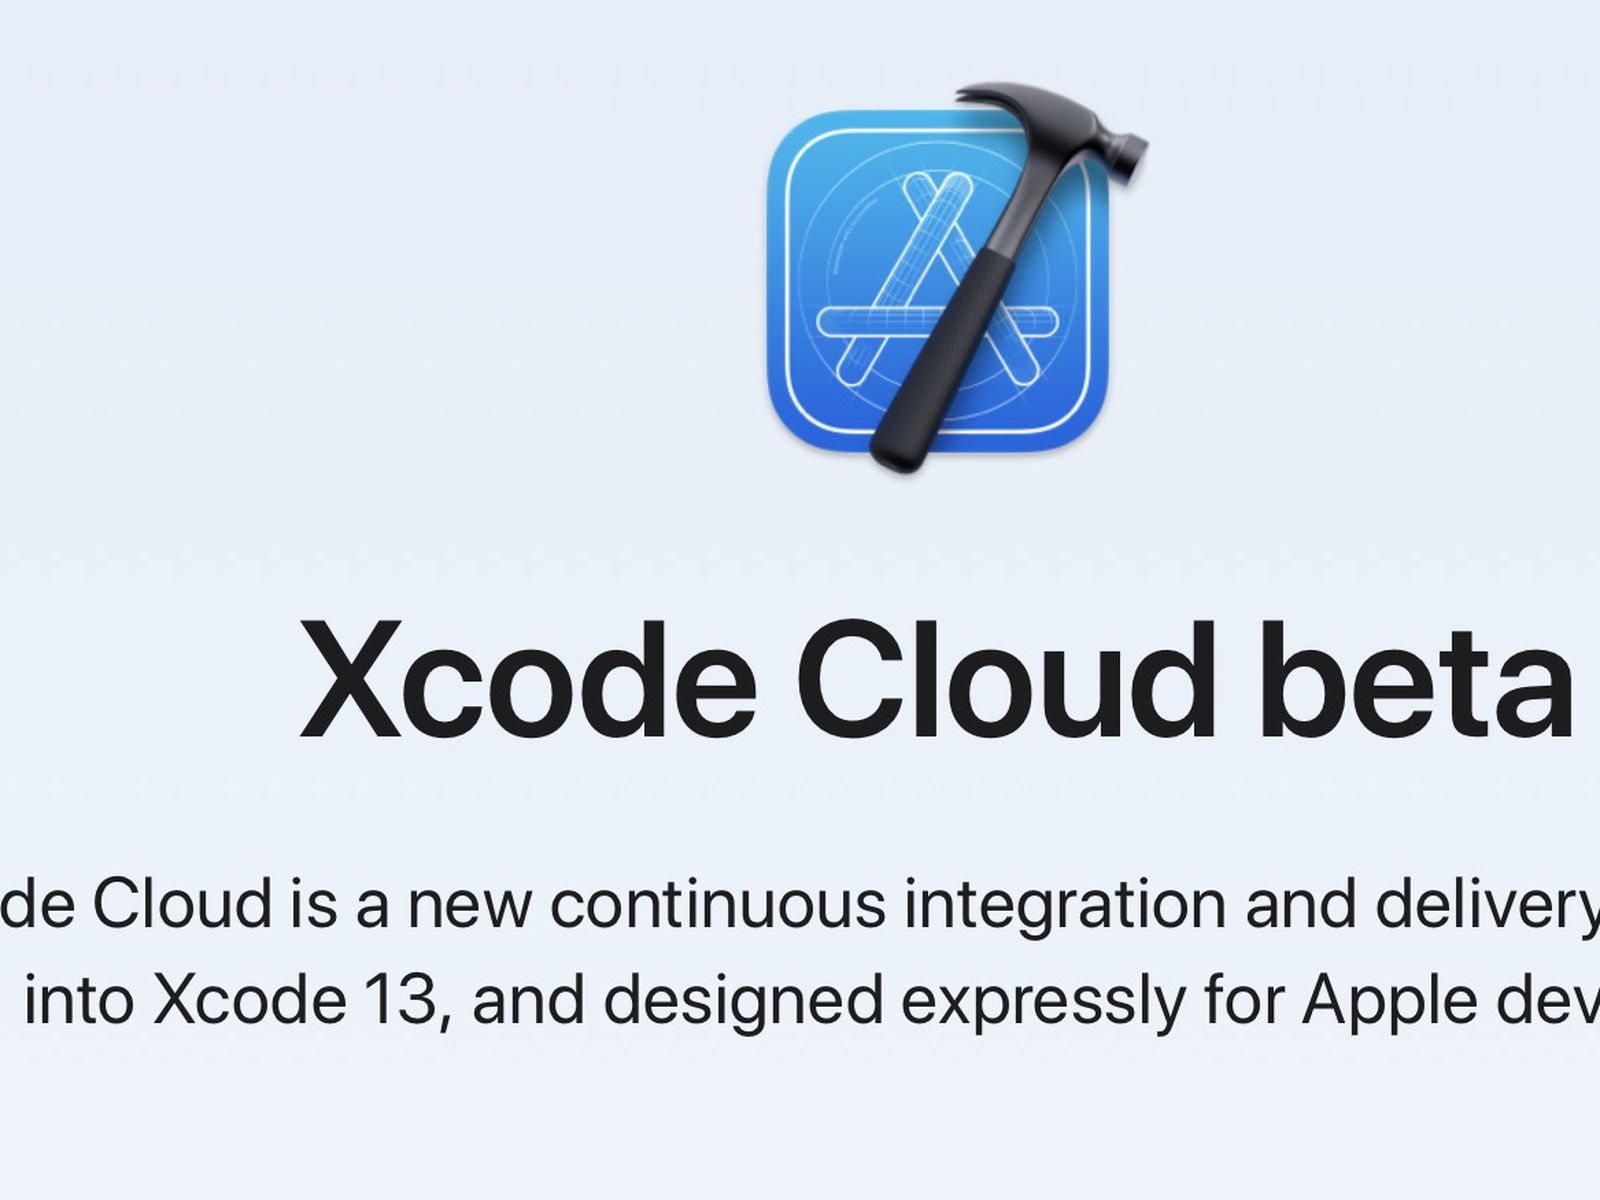 Xcode cloud